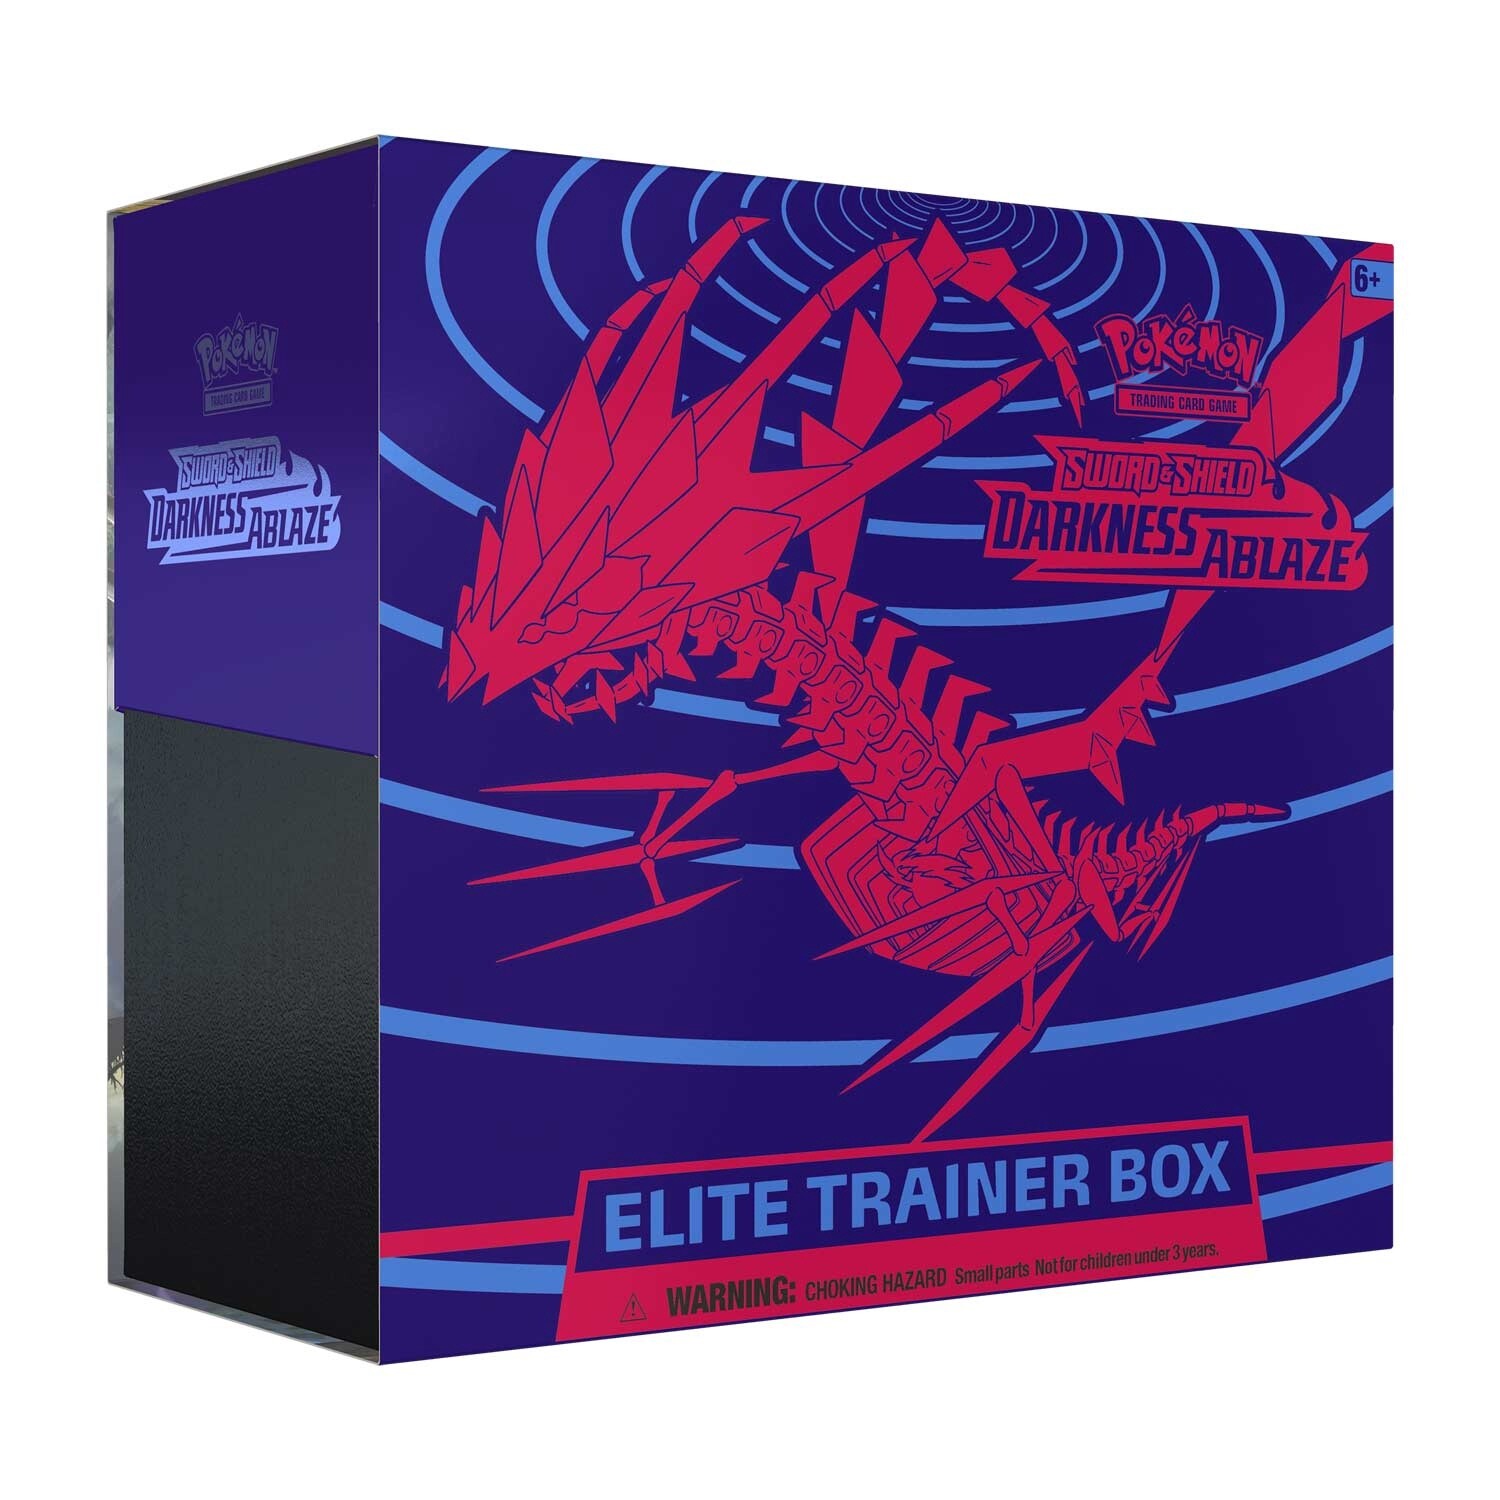 Darkness Ablaze: Elite Trainer Box